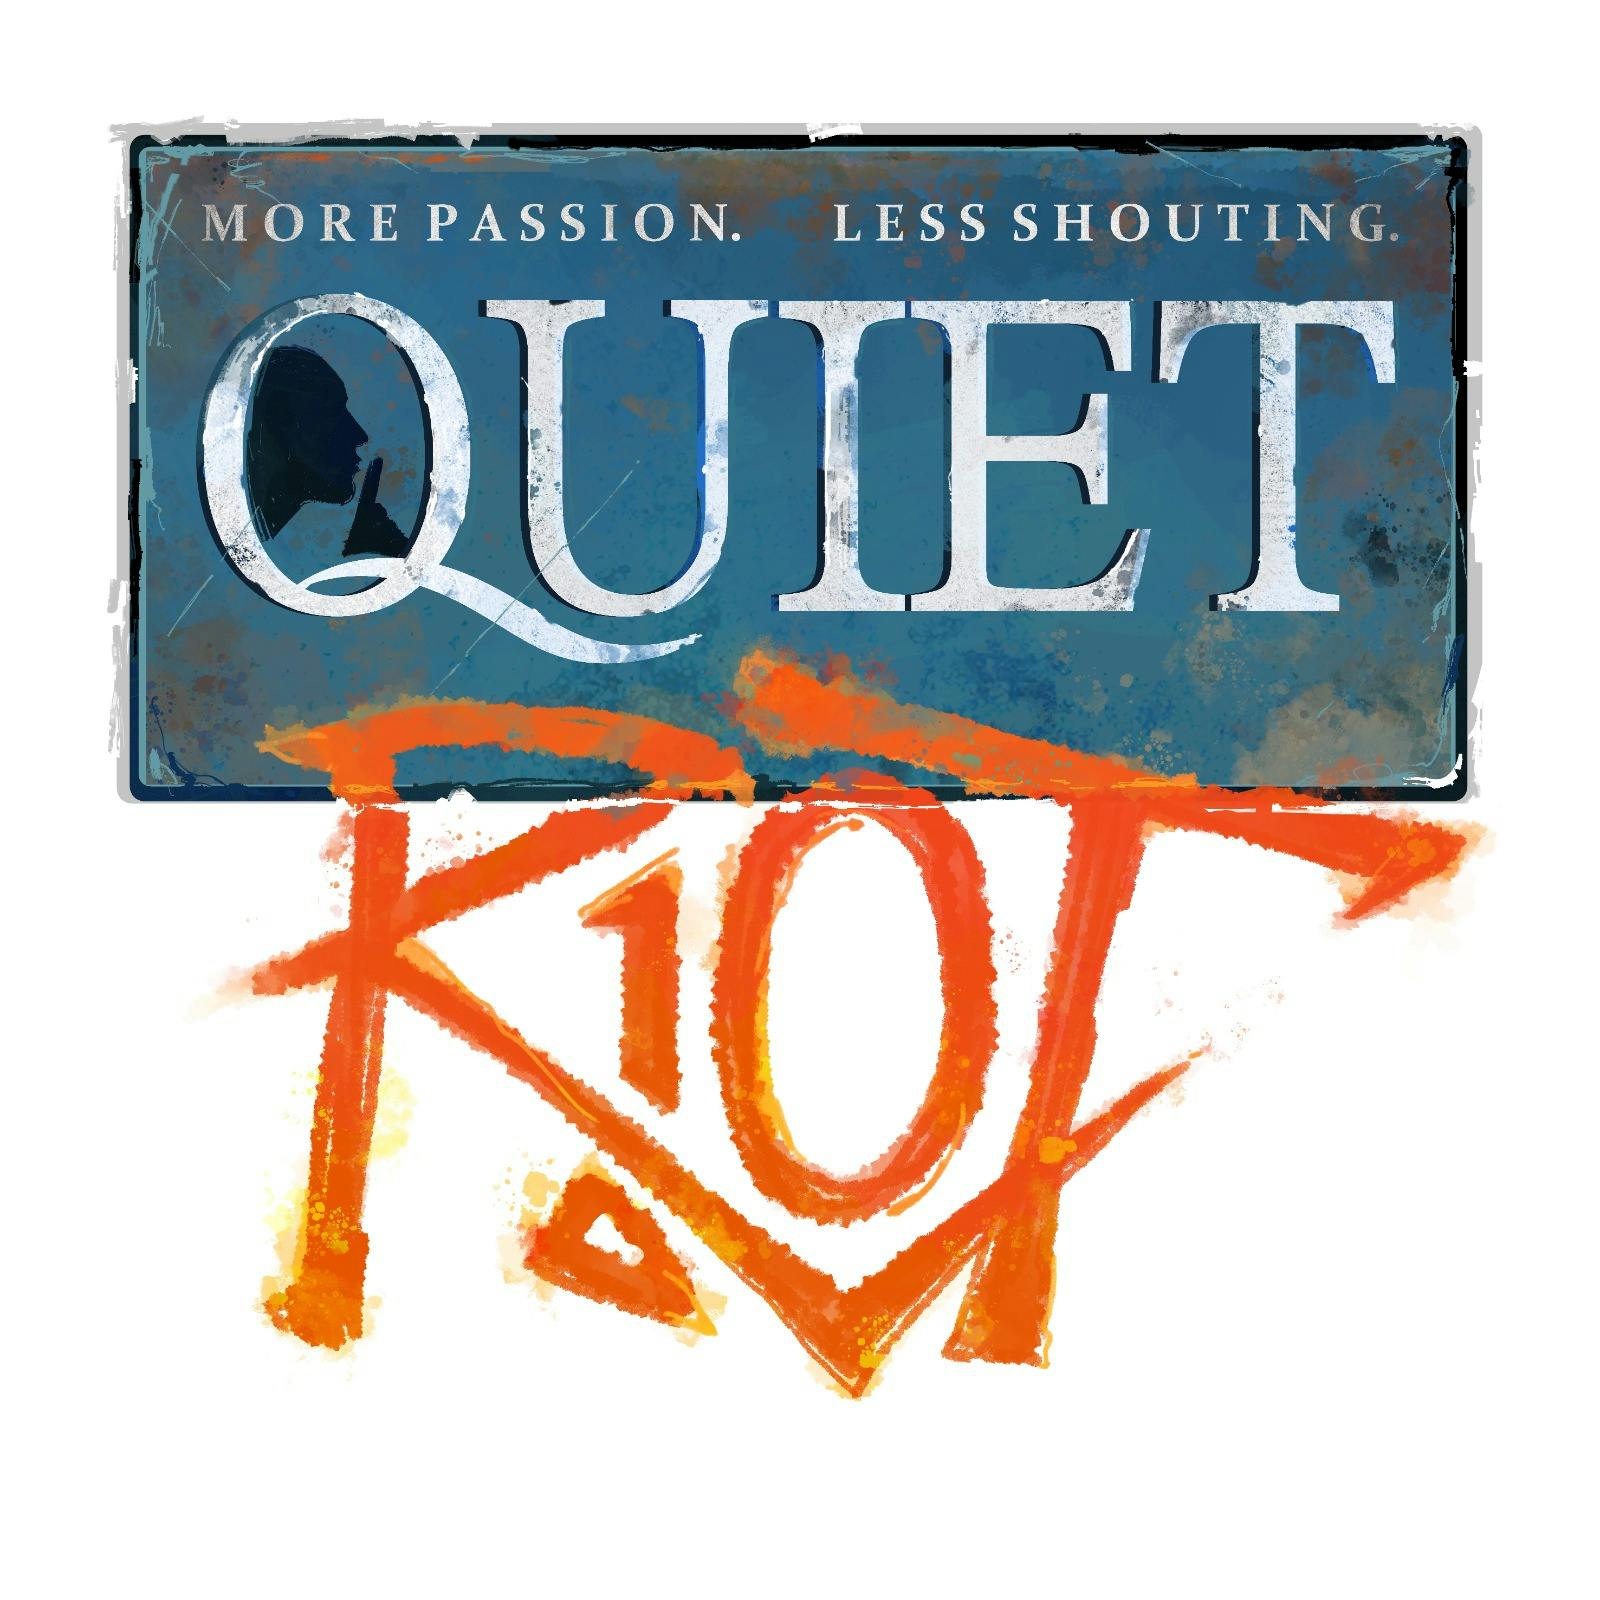 Quiet Riot, trailer #1